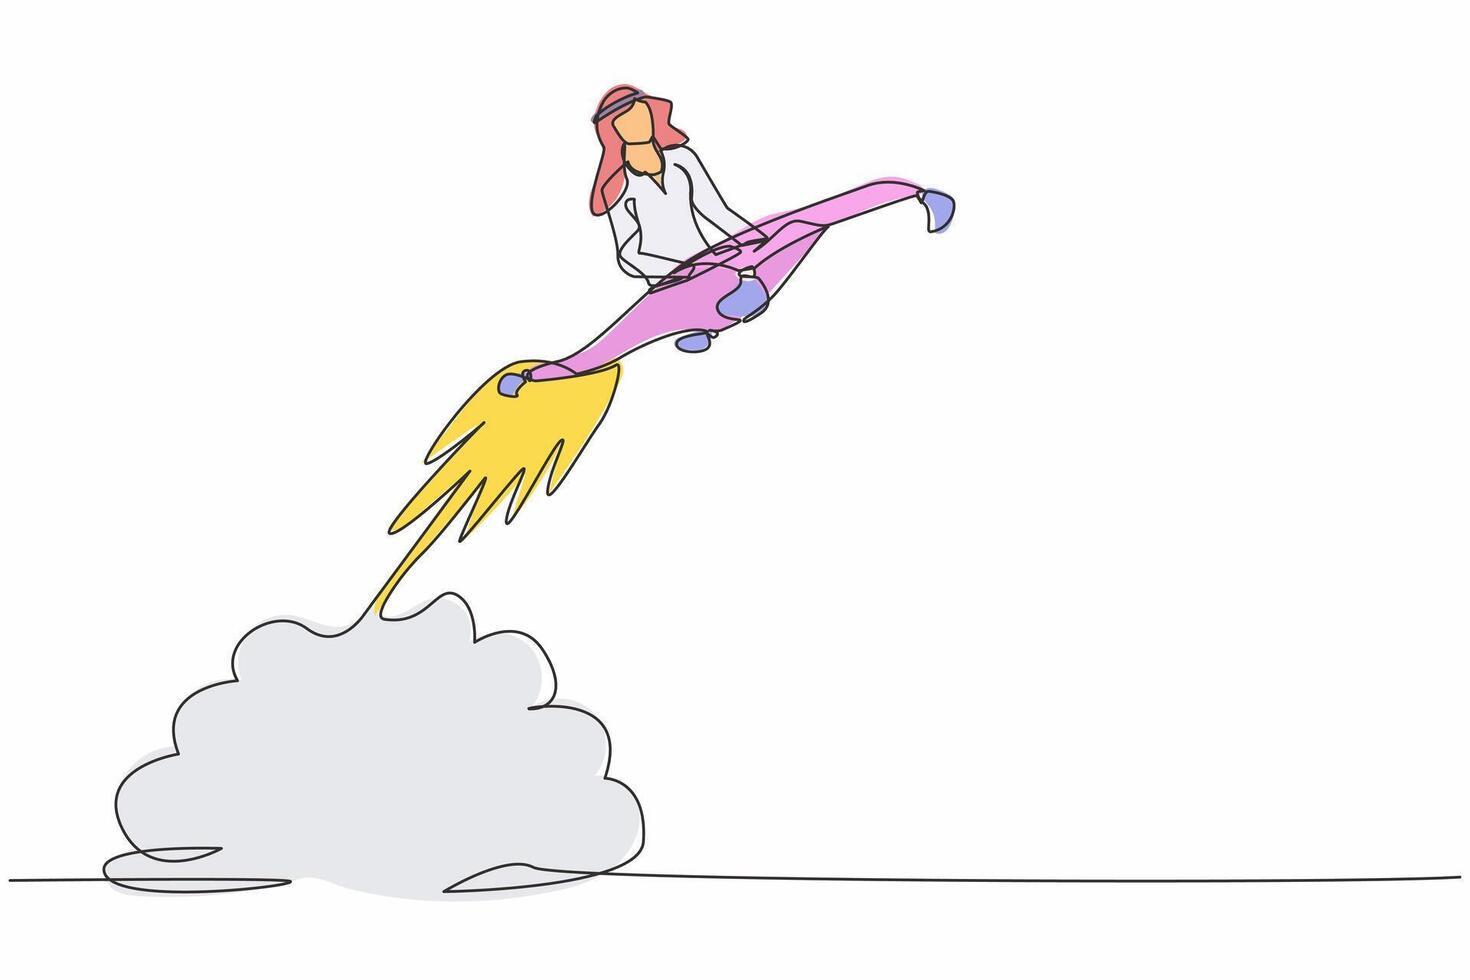 Single kontinuierlich Linie Zeichnung arabisch Geschäftsmann Reiten Magie Teppich Rakete fliegend im das Himmel. Anfang Geschäft Beschleunigung Konzept. erhöhen, ansteigen Der Umsatz Wachstum. einer Linie zeichnen Design Vektor Illustration